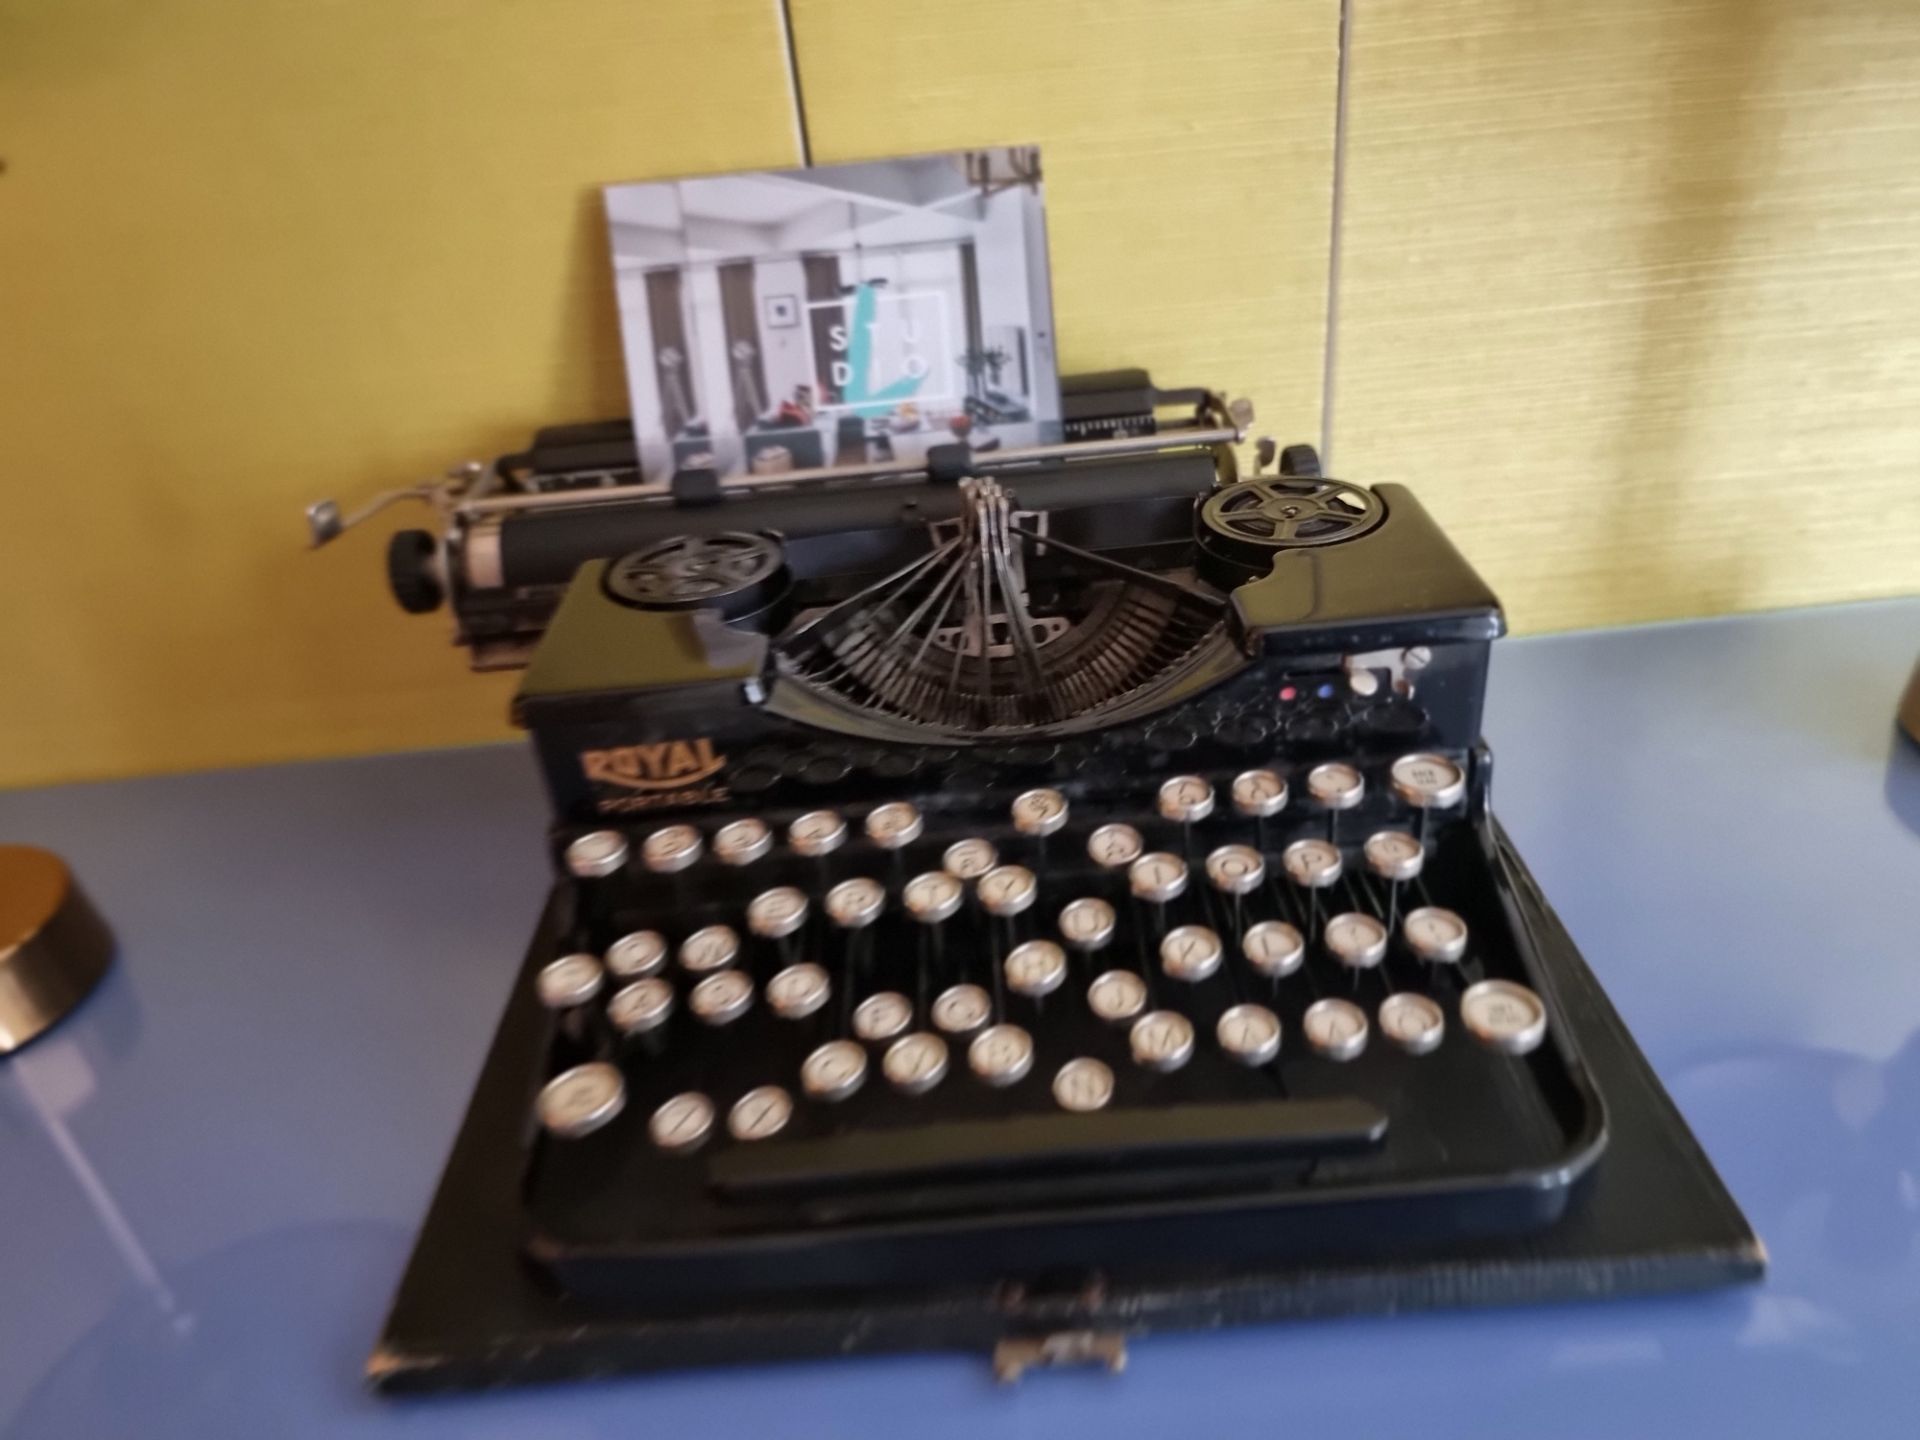 A Royal Portable American Black Typewriter 1930s (Apt 16) - Image 3 of 3